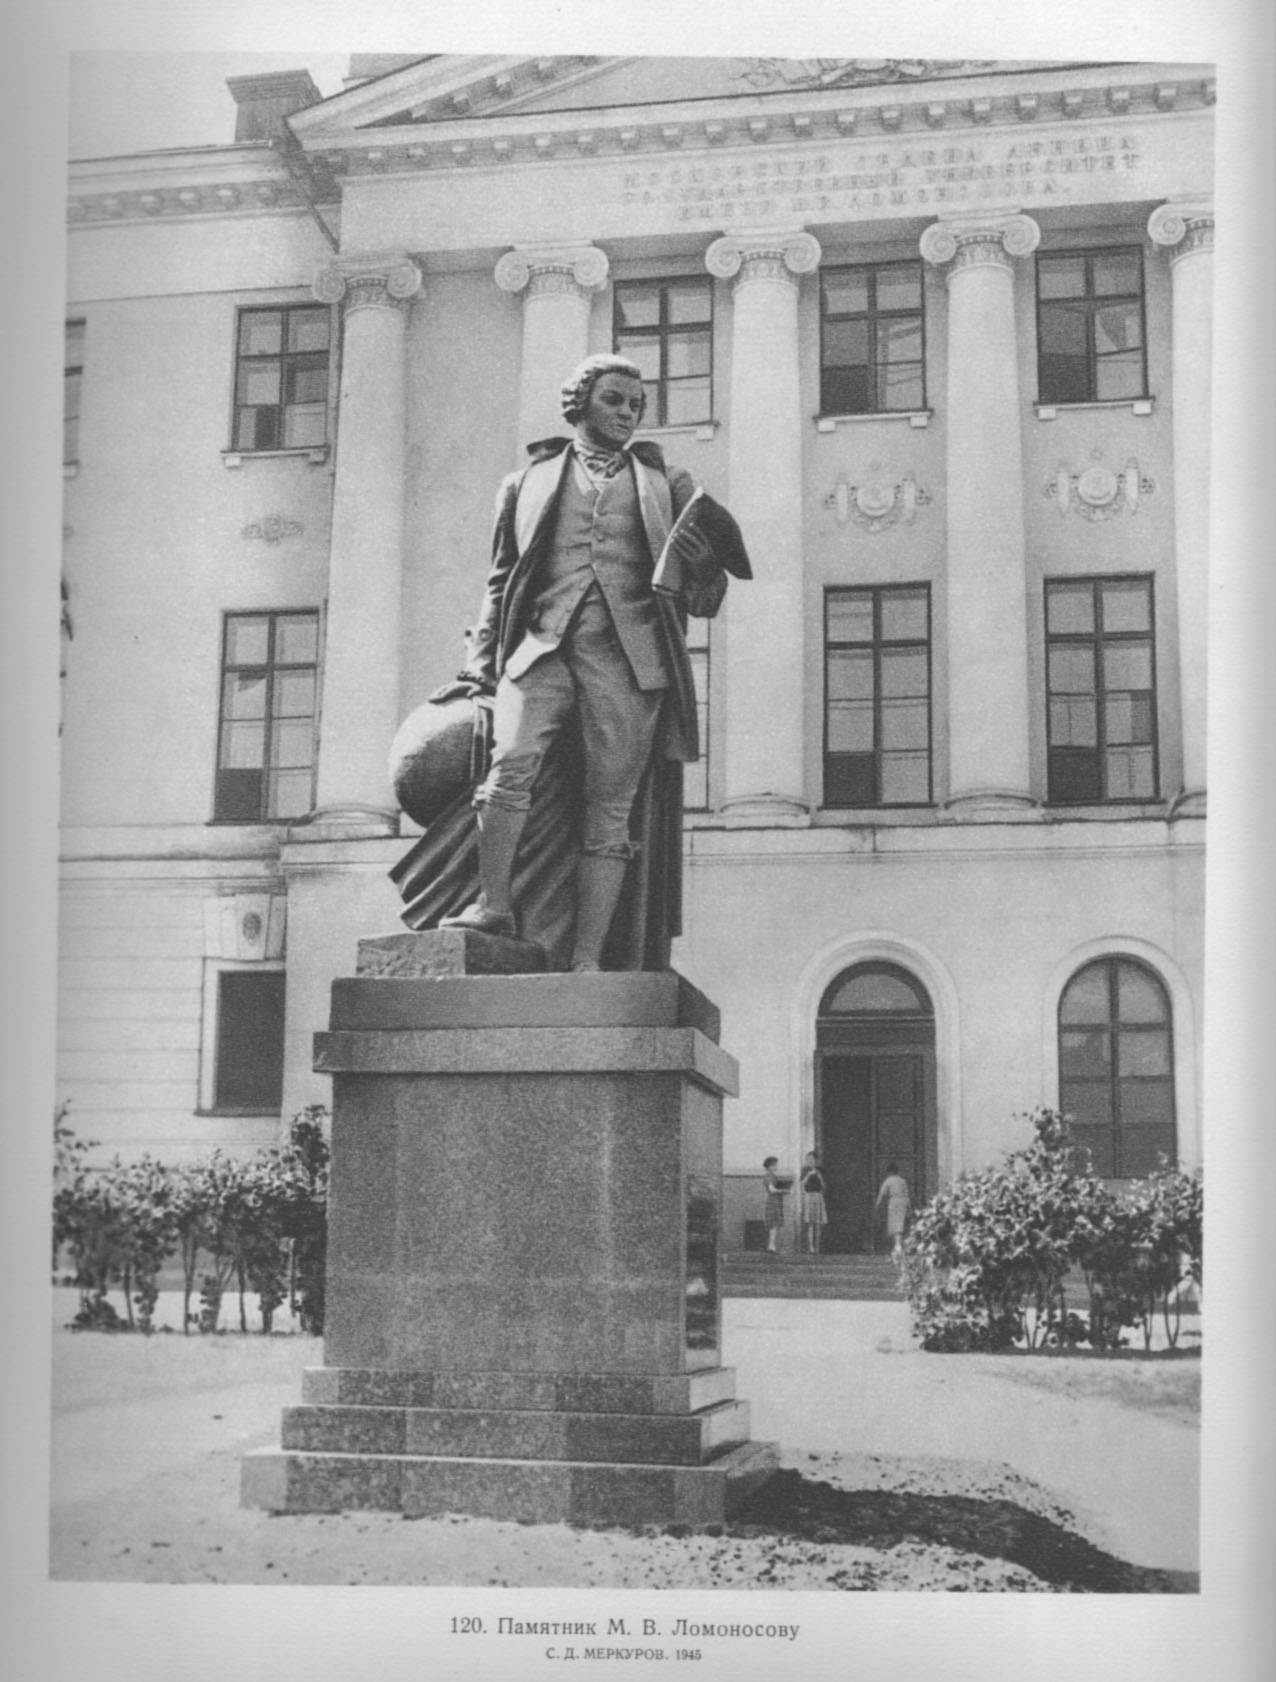 120. Памятник М. В. Ломоносову. С. Д. Меркуров. 1945